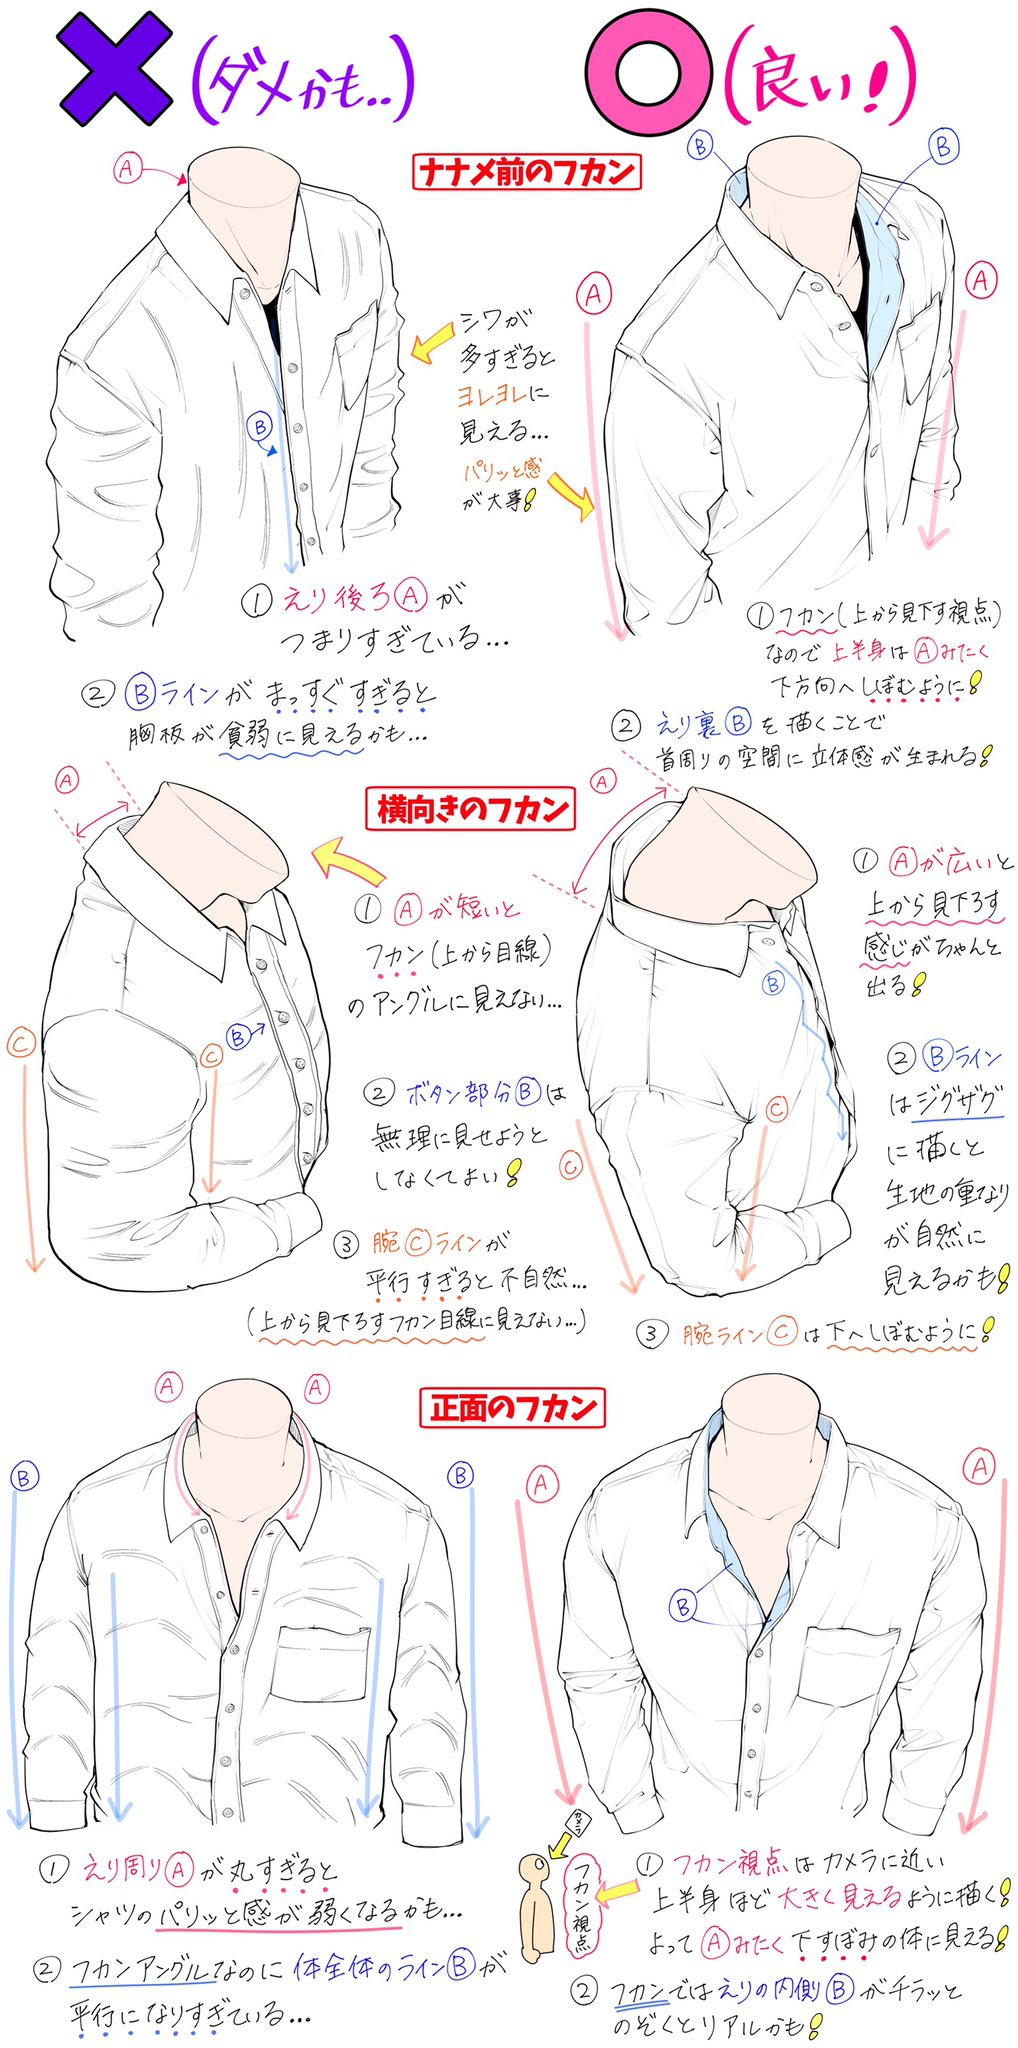 吉村拓也 イラスト講座 シャツの襟の描き方 下手に見えるポイント と 上手に見えるポイント